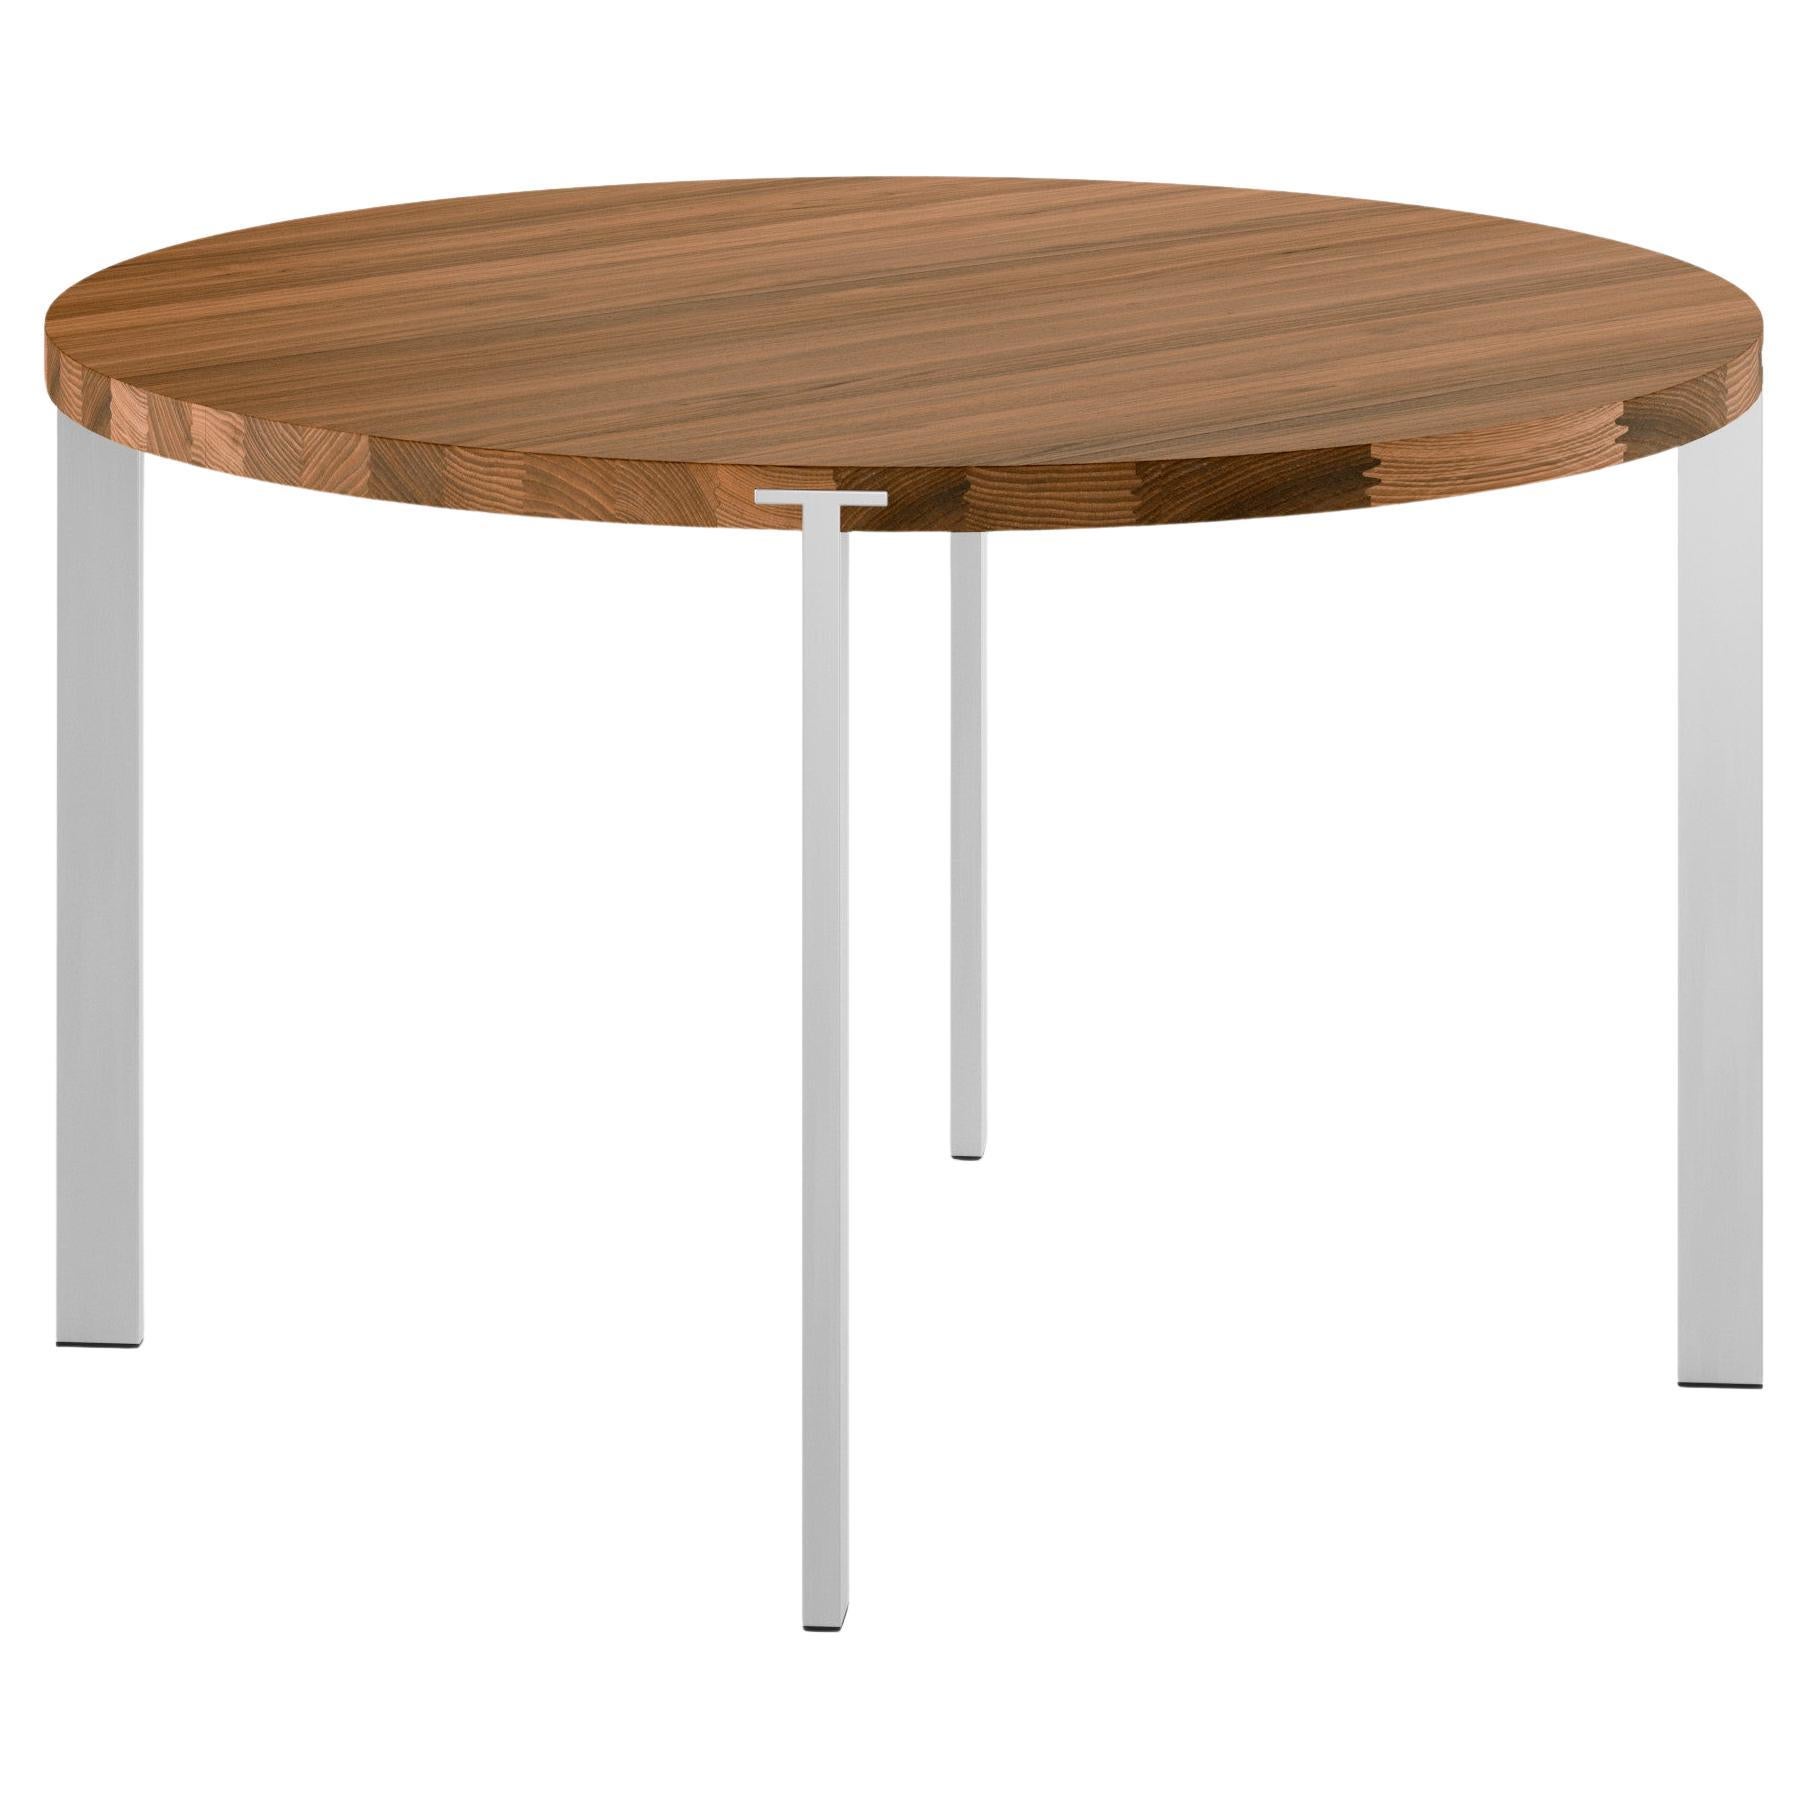 GM2100 Round Table, Walnut - Design by Nissen & Gehl MDD For Sale